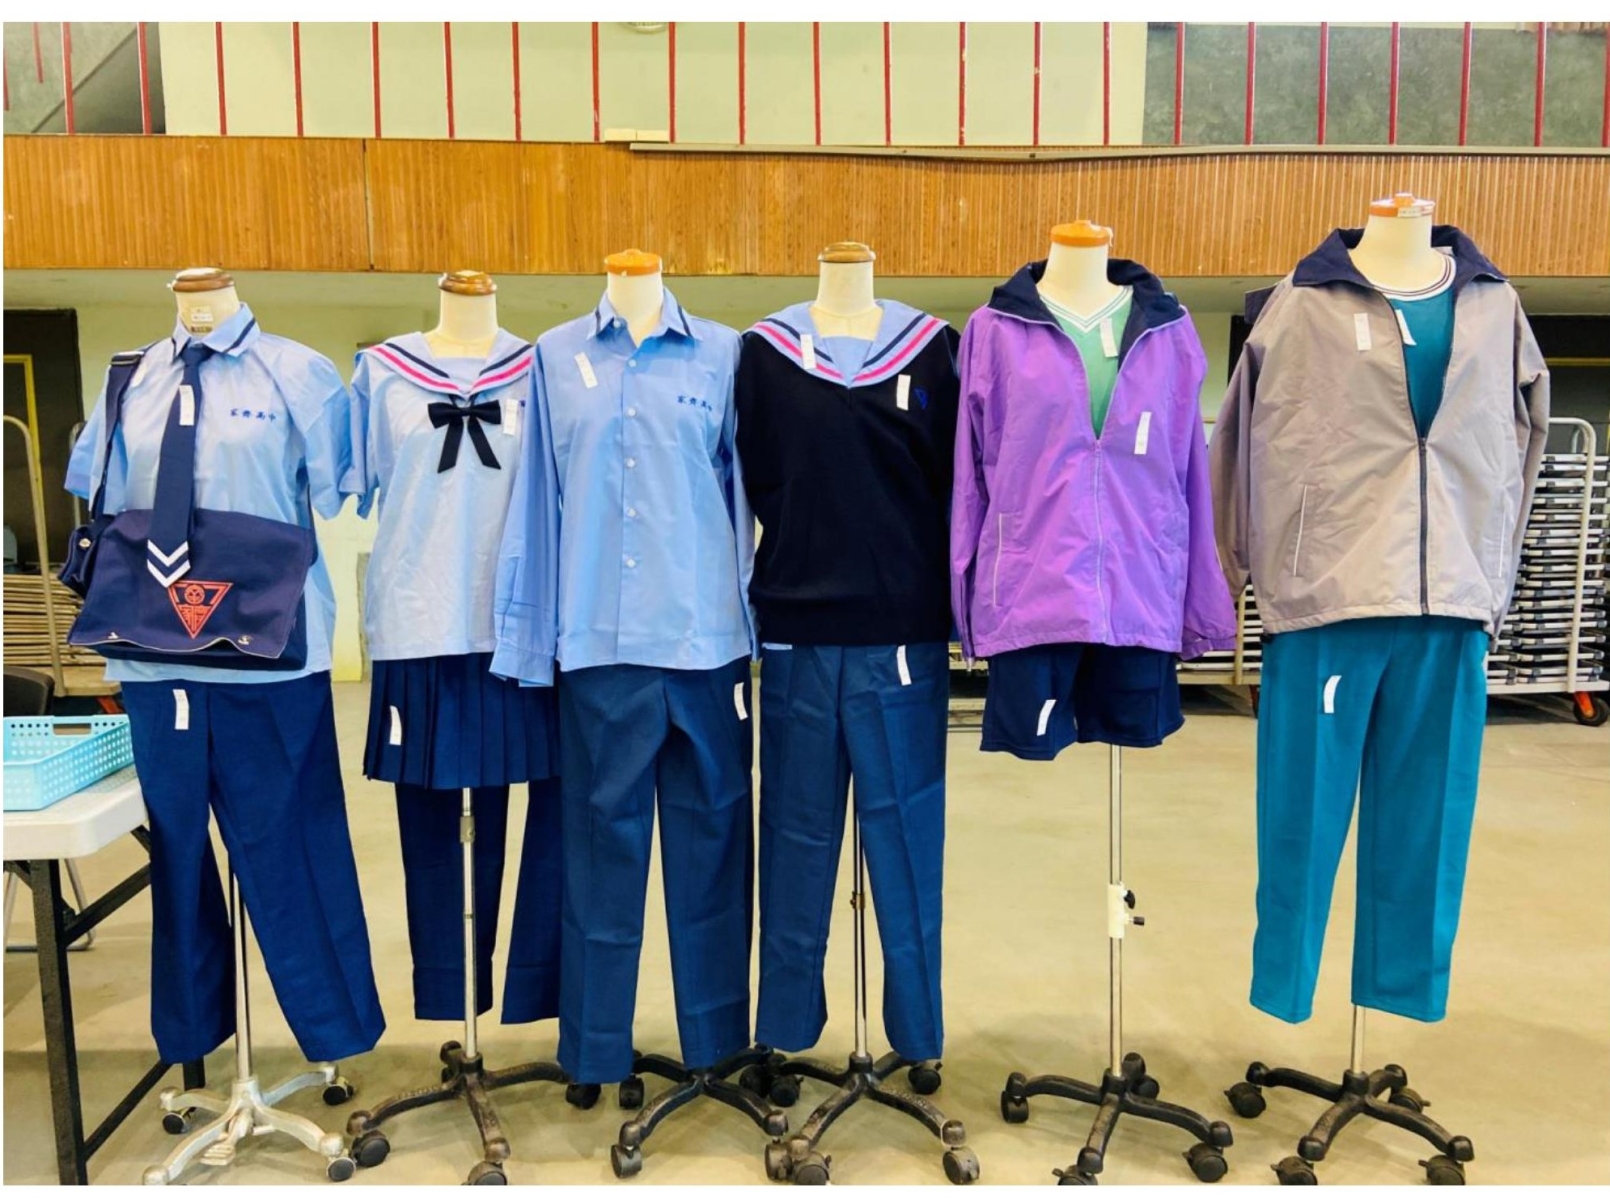 Trường thiết kế nhiều mẫu đồng phục cho học sinh lựa chọn